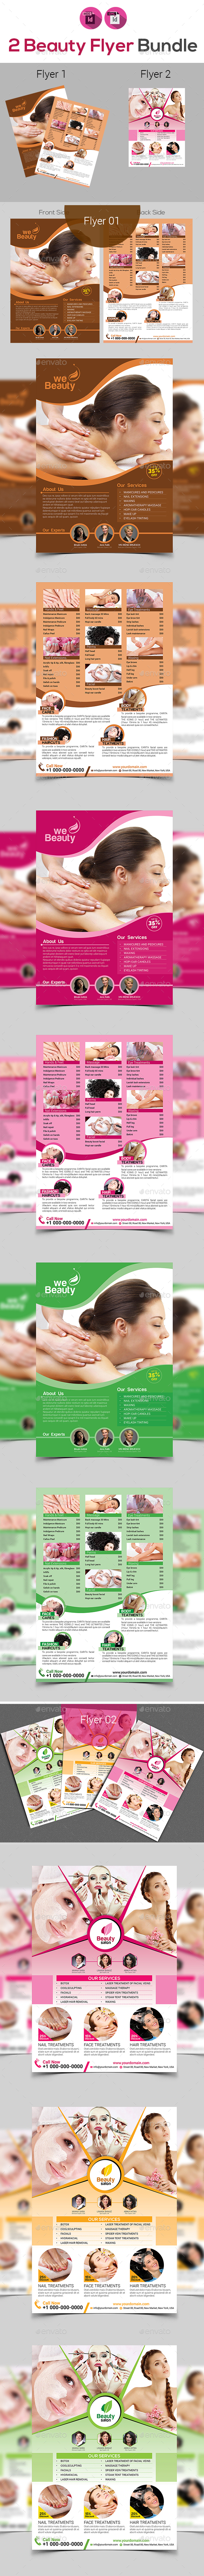 Beauty Spa Salon Flyer Bundle V3